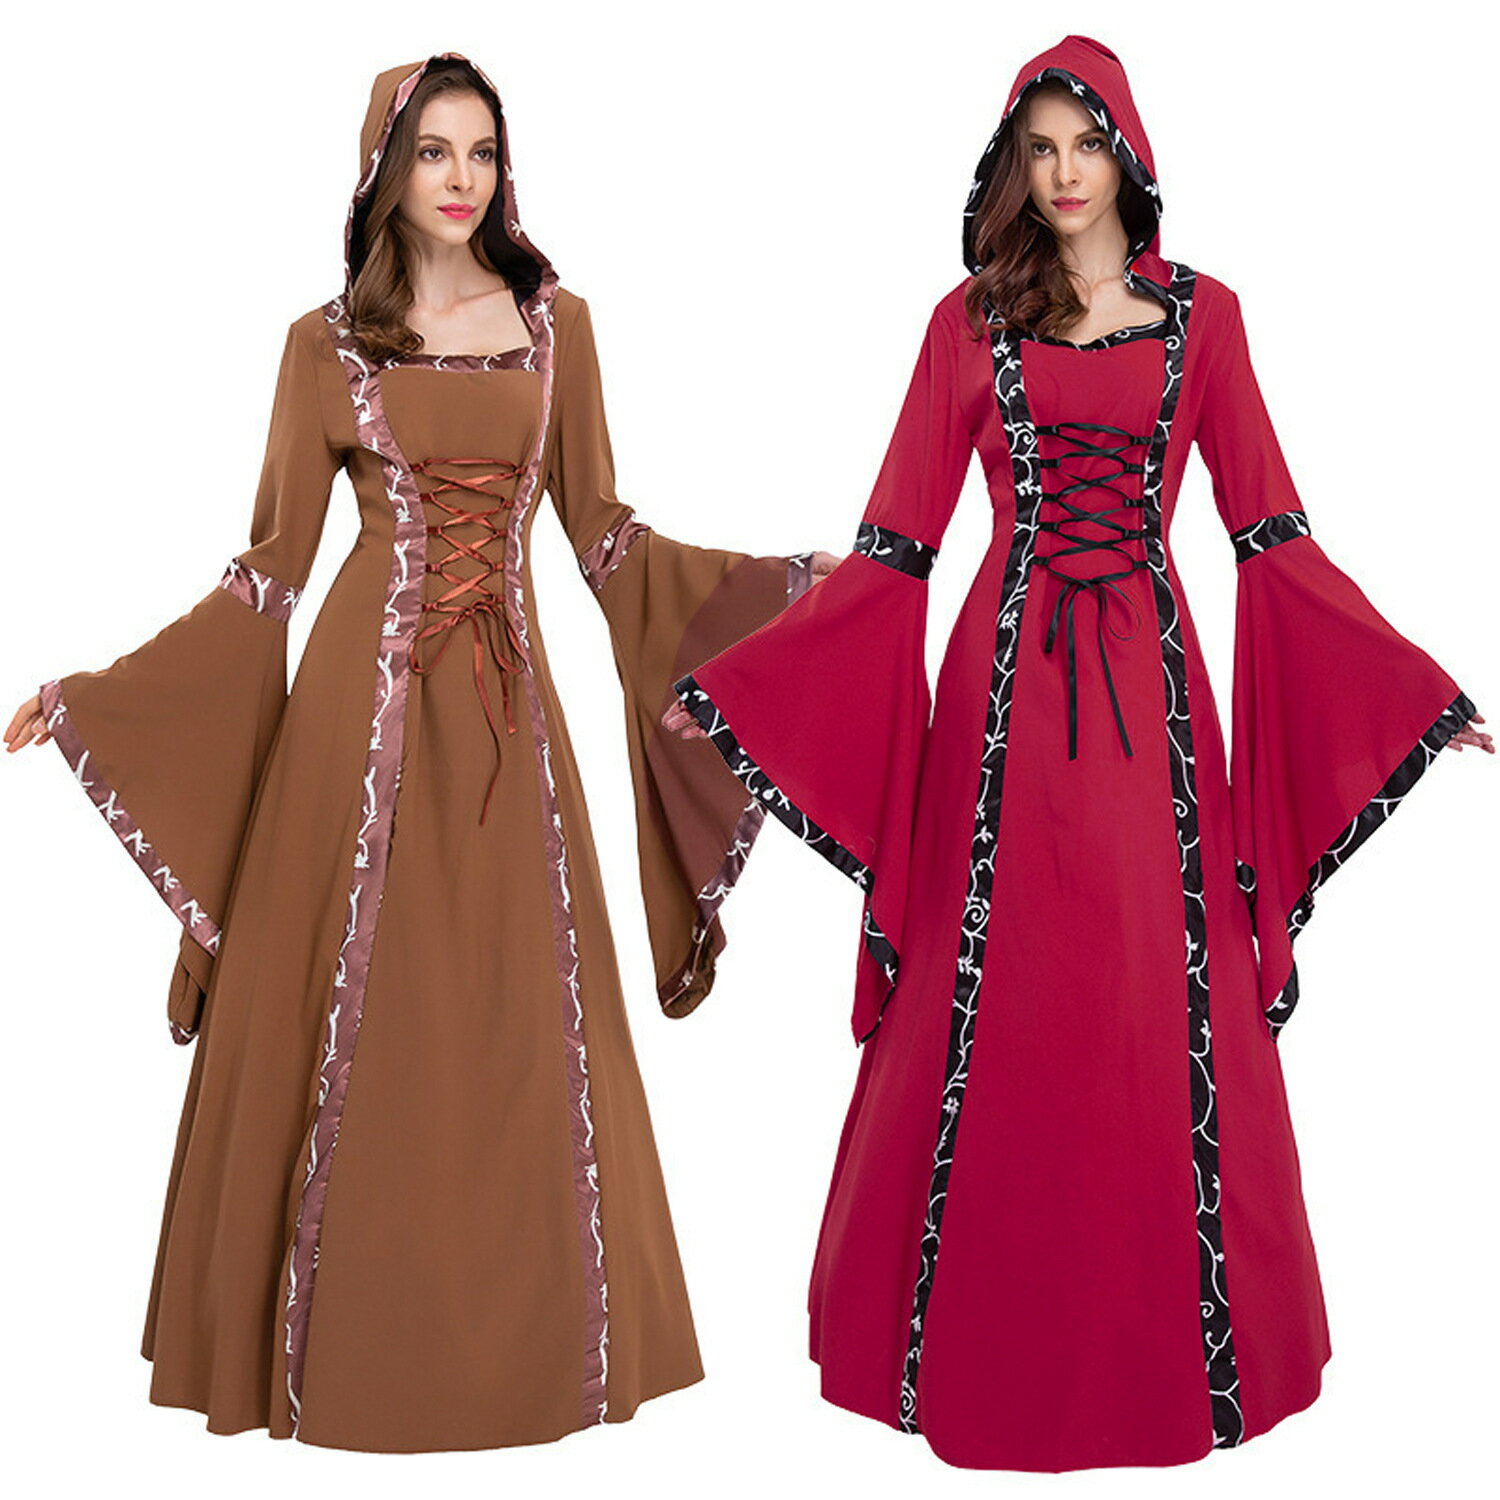 歐美爆款女裝 貴族複古宮廷 中世紀喇叭袖長裙 成人萬聖節連衣裙